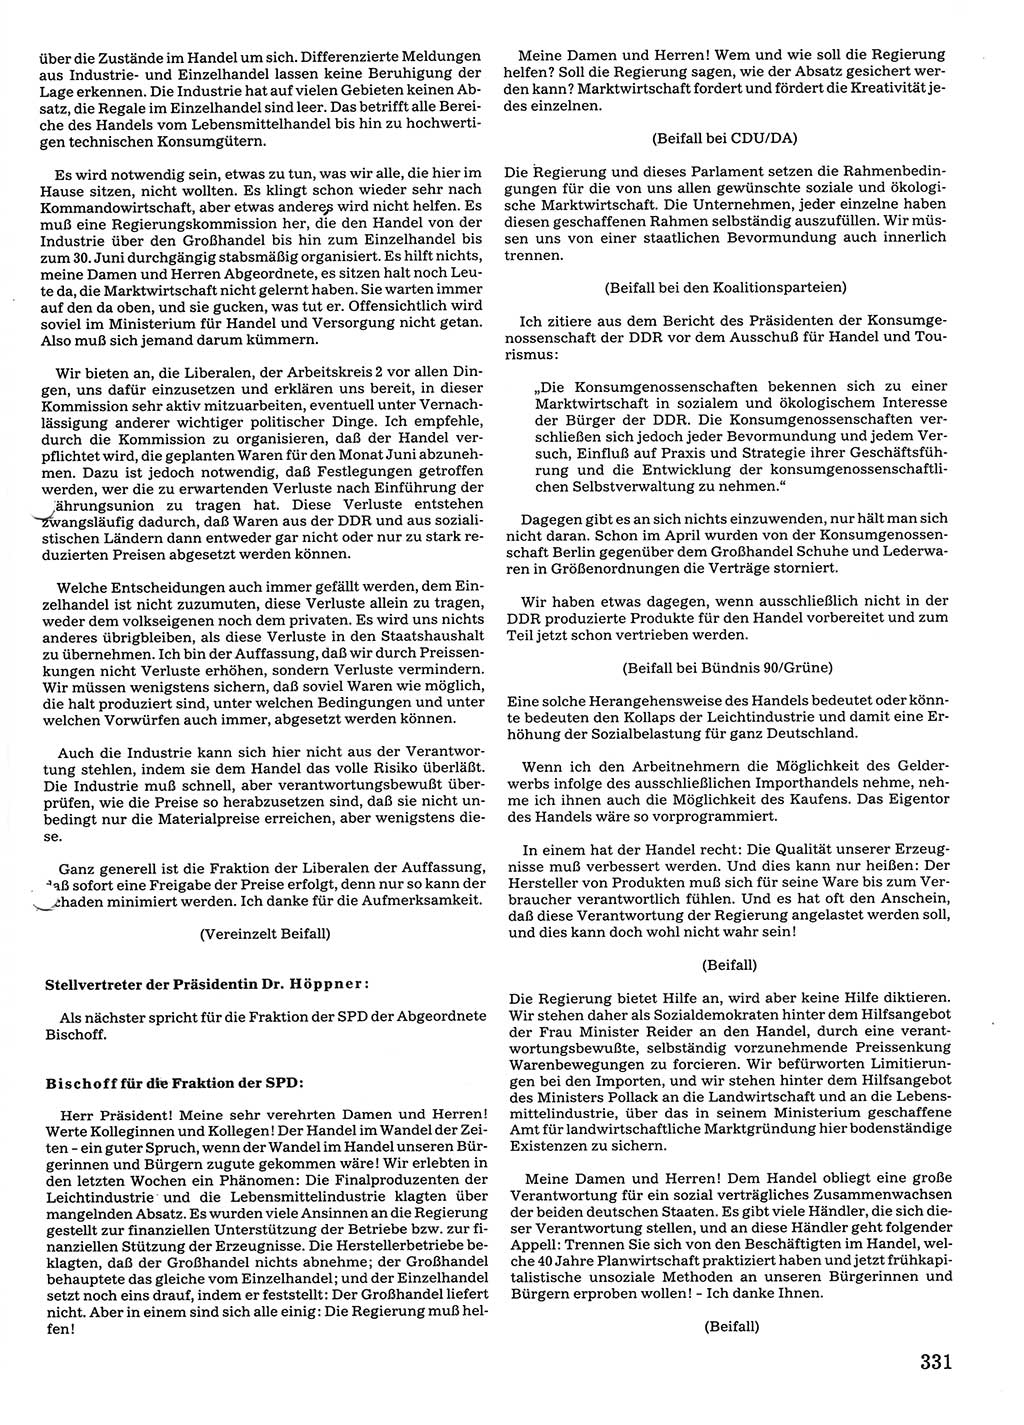 Tagungen der Volkskammer (VK) der Deutschen Demokratischen Republik (DDR), 10. Wahlperiode 1990, Seite 331 (VK. DDR 10. WP. 1990, Prot. Tg. 1-38, 5.4.-2.10.1990, S. 331)